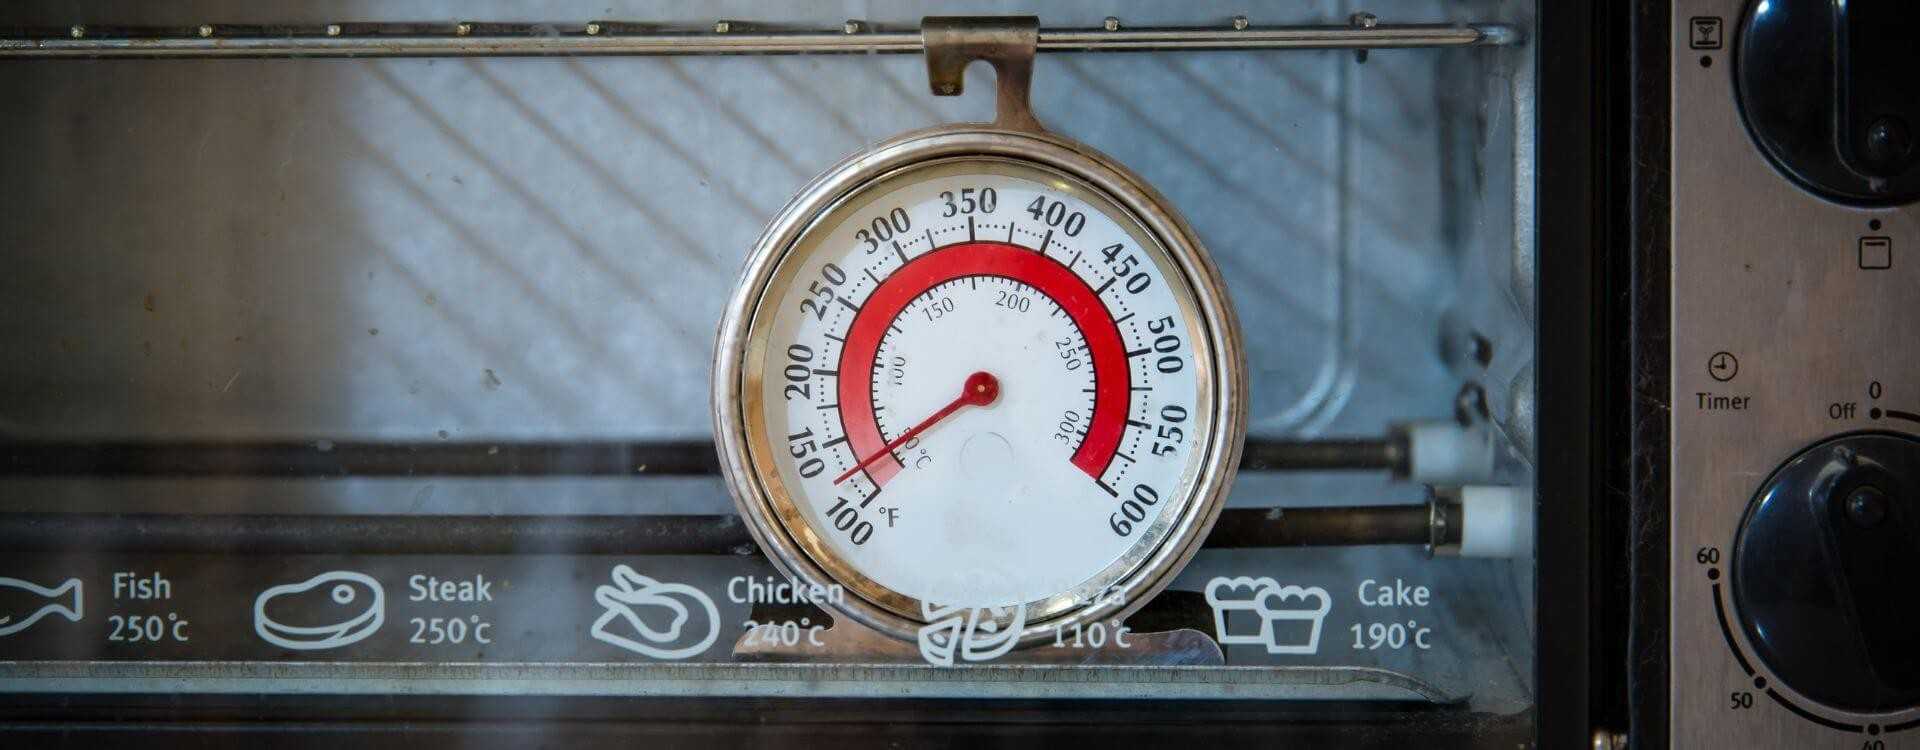 Comment utiliser un thermomètre au four ?